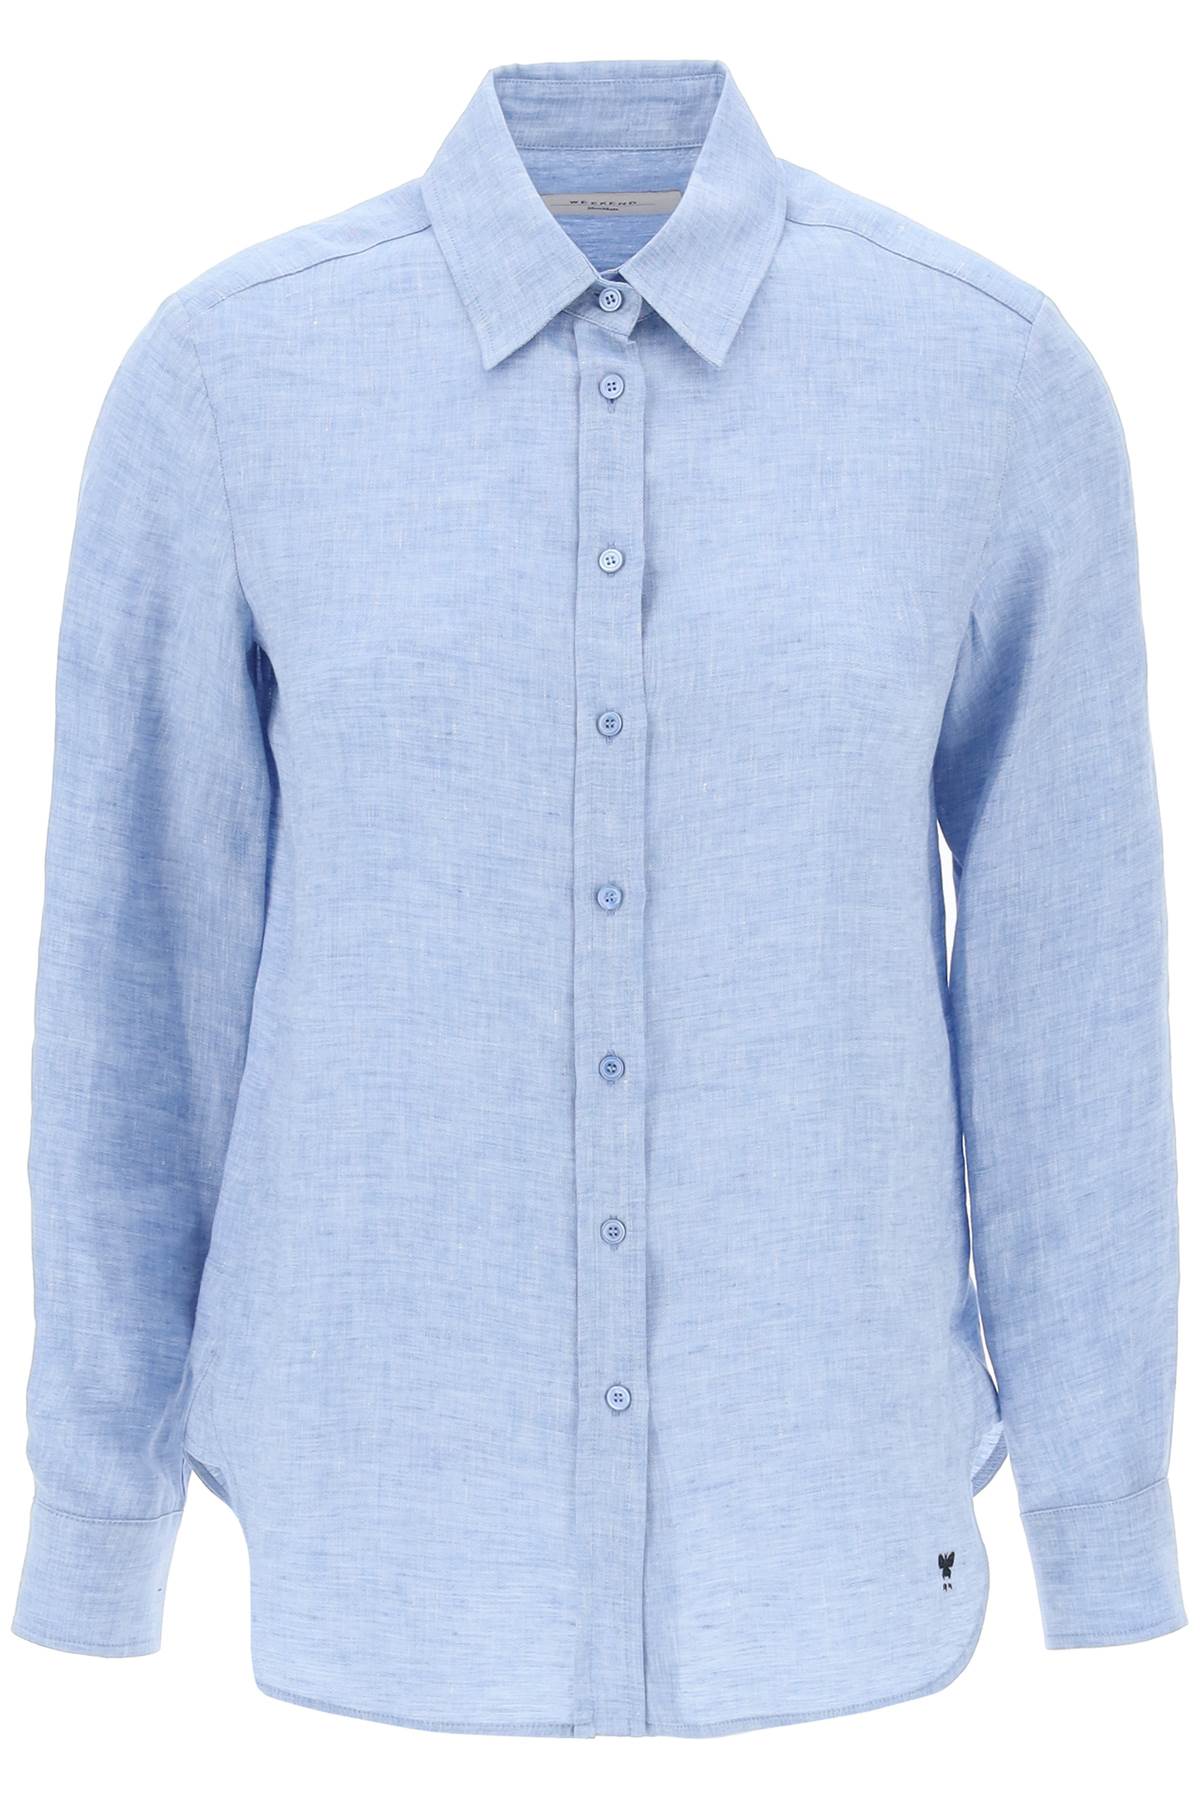 Weekend Max Mara 'werner' Linen Shirt In Light Blue